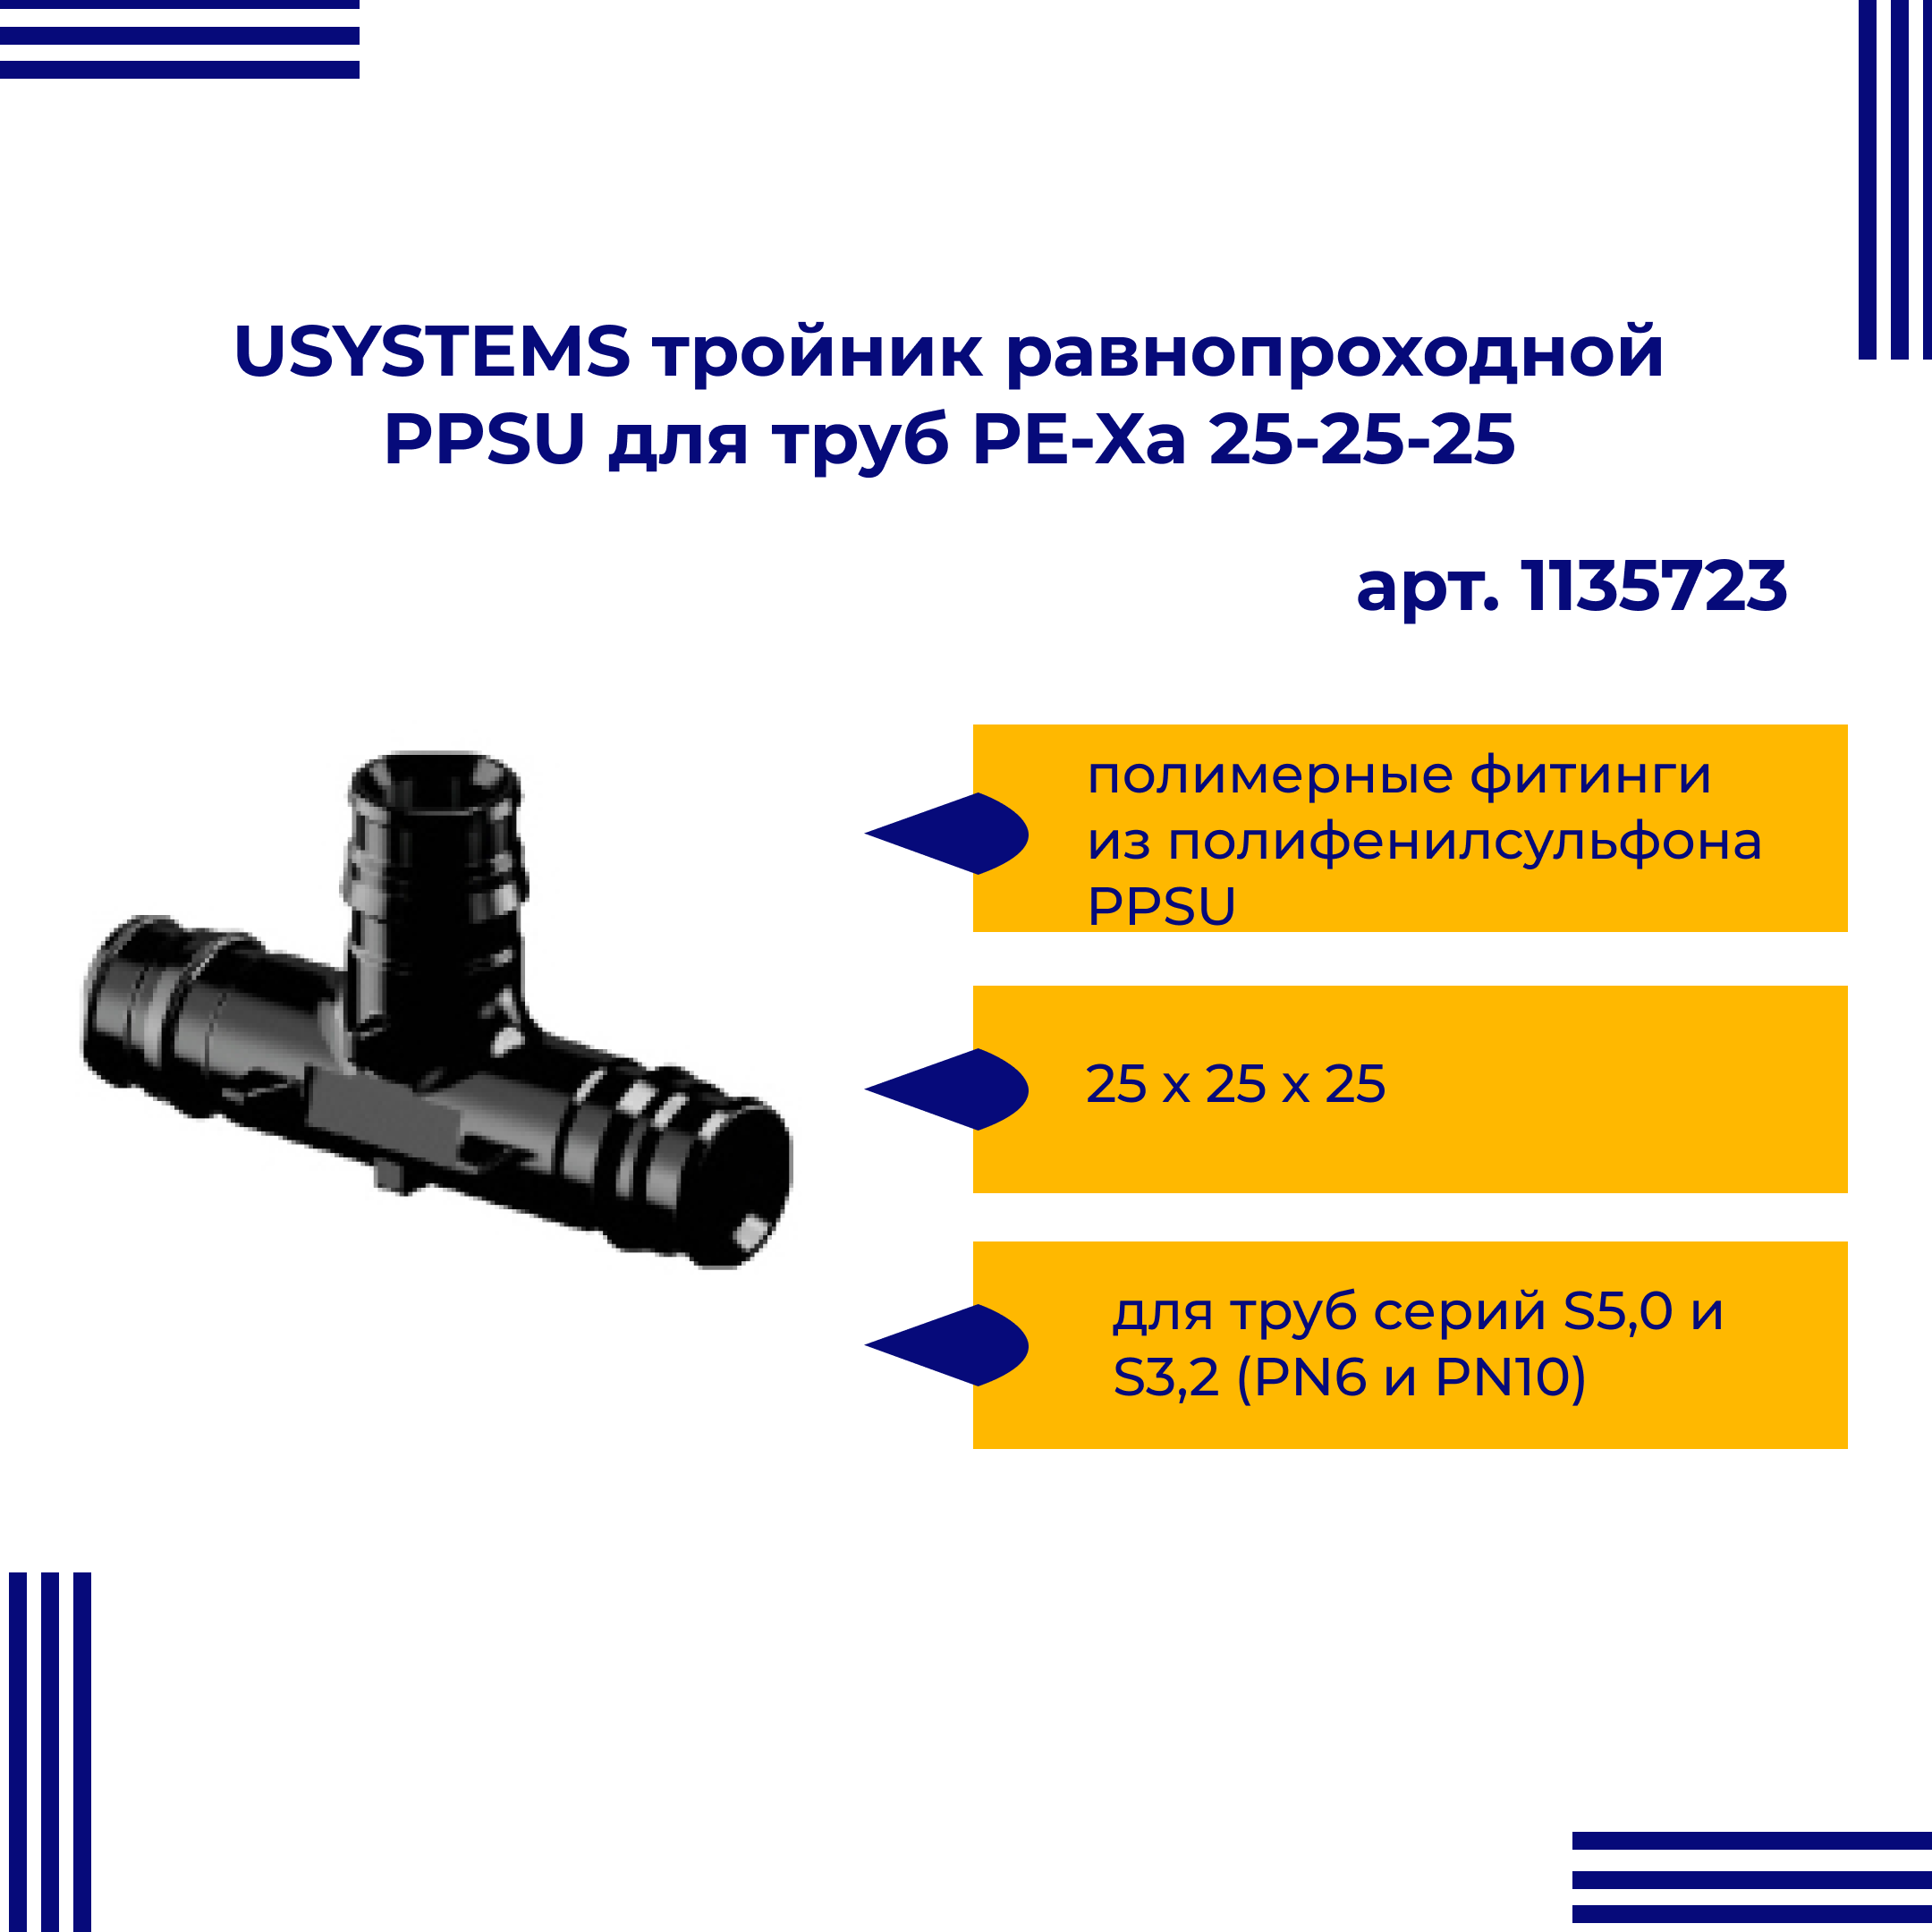 Тройник PPSU USYSTEMS 1135723 равнопроходной для труб PE-Xa 25-25-25 двойная водорозетка для труб из сшитого полиэтилена pex qe one plus